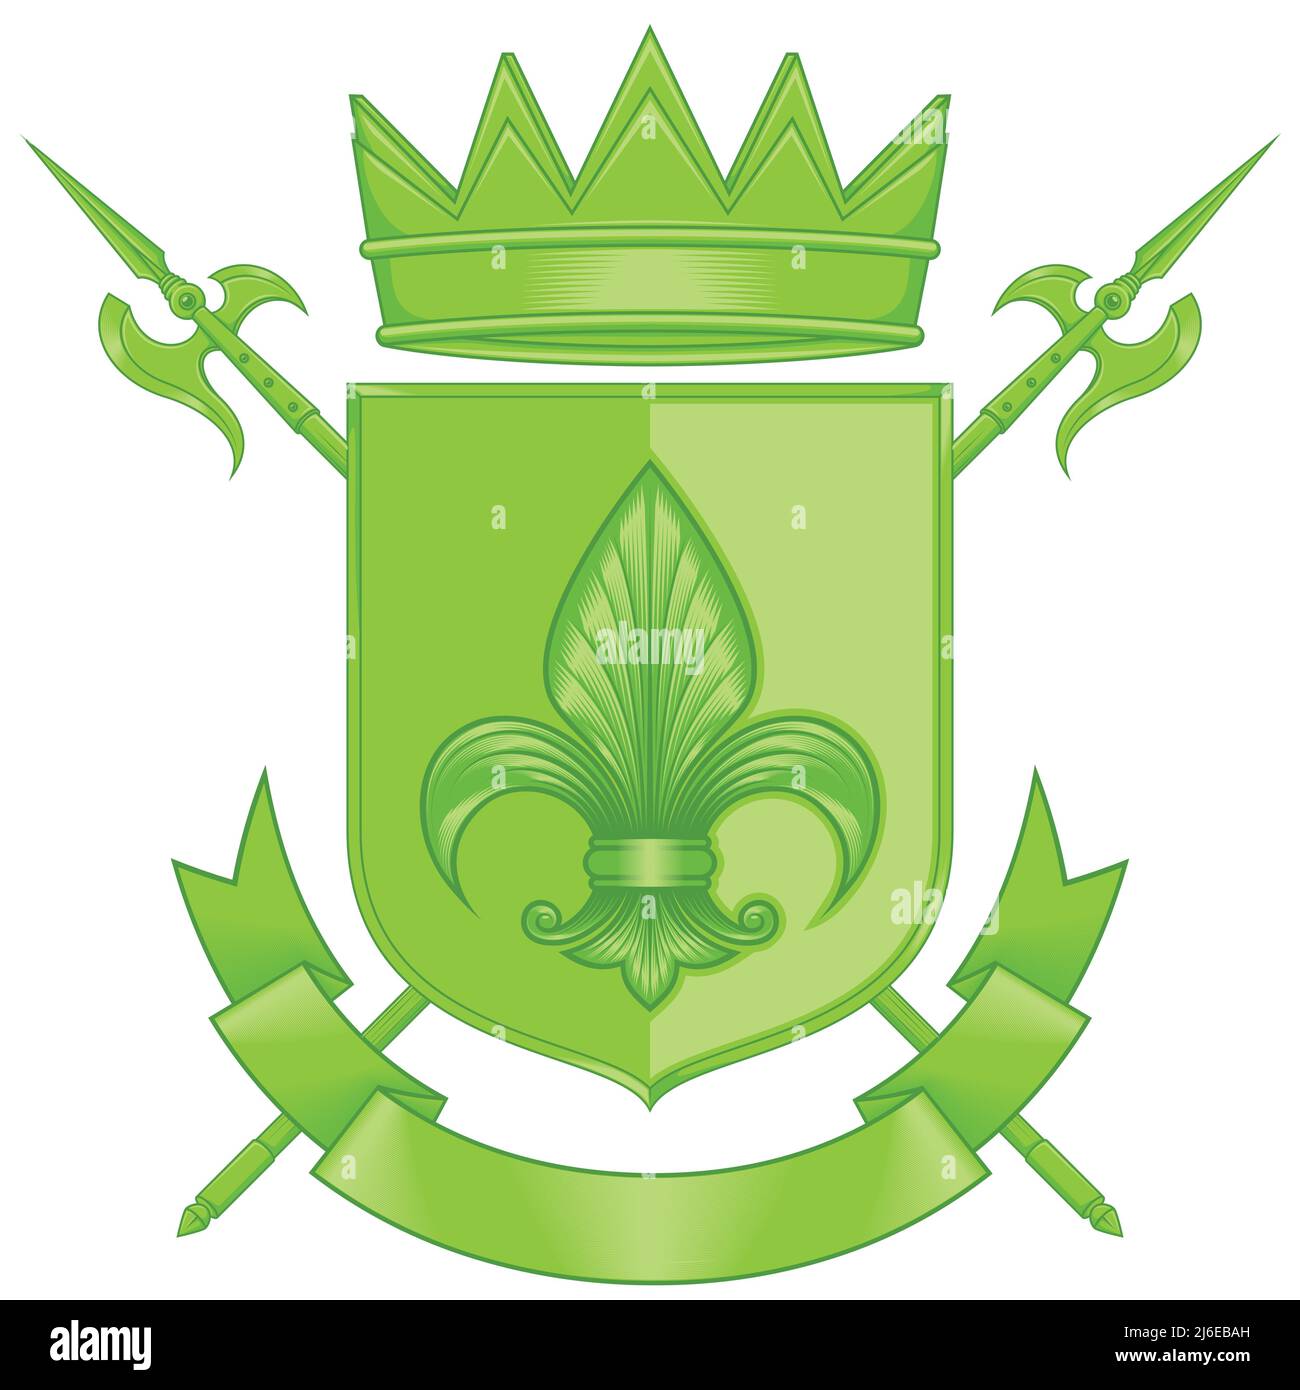 Wappen des Mittelalters mit Wappen, Wappen mit Fleur de Lis, Halberd, Krone und Band Stock Vektor